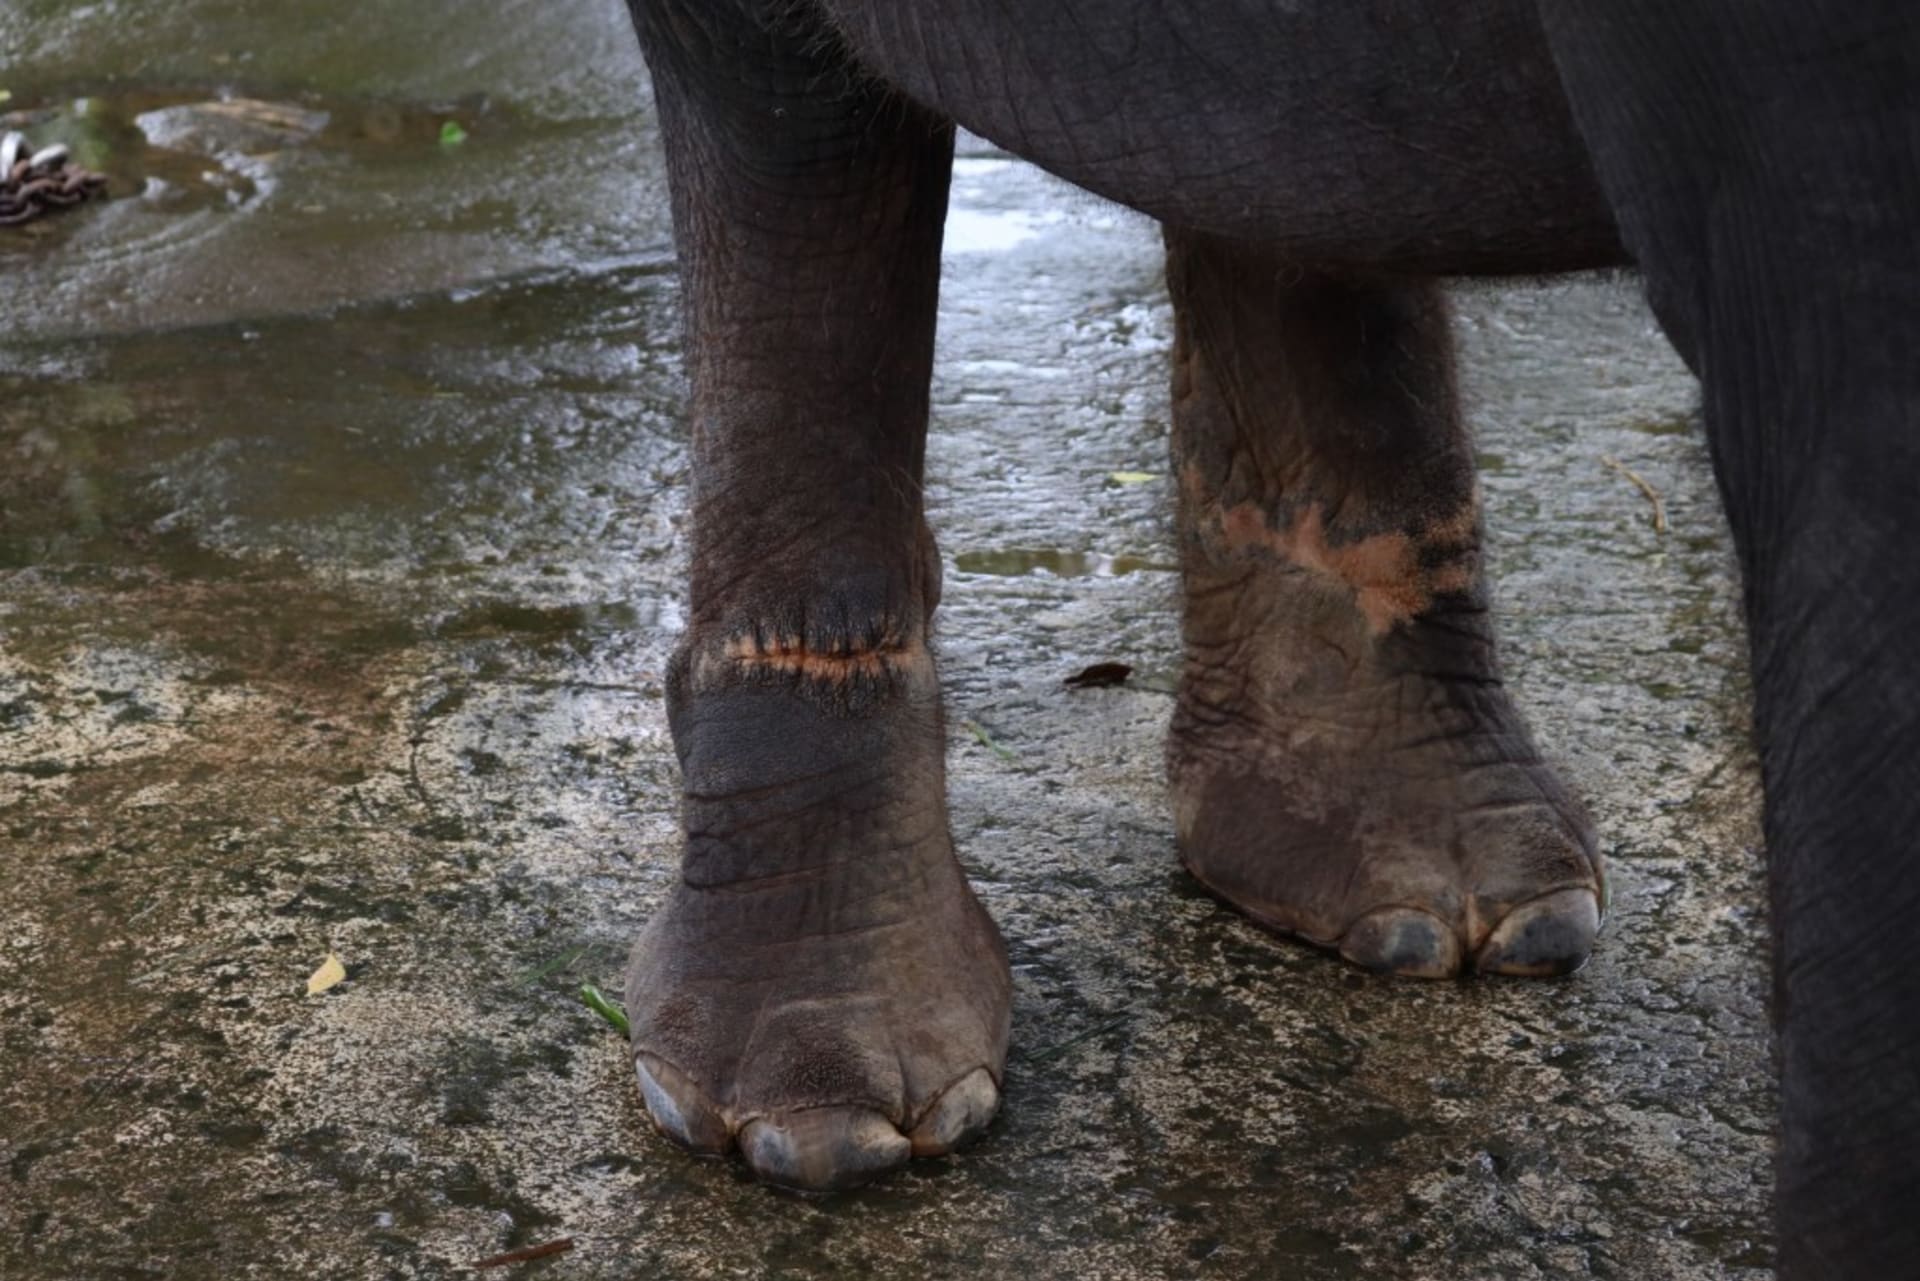 Sloni držení v parku mají po těle šrámy a jizvy. Zdroj: Lady Freethinker